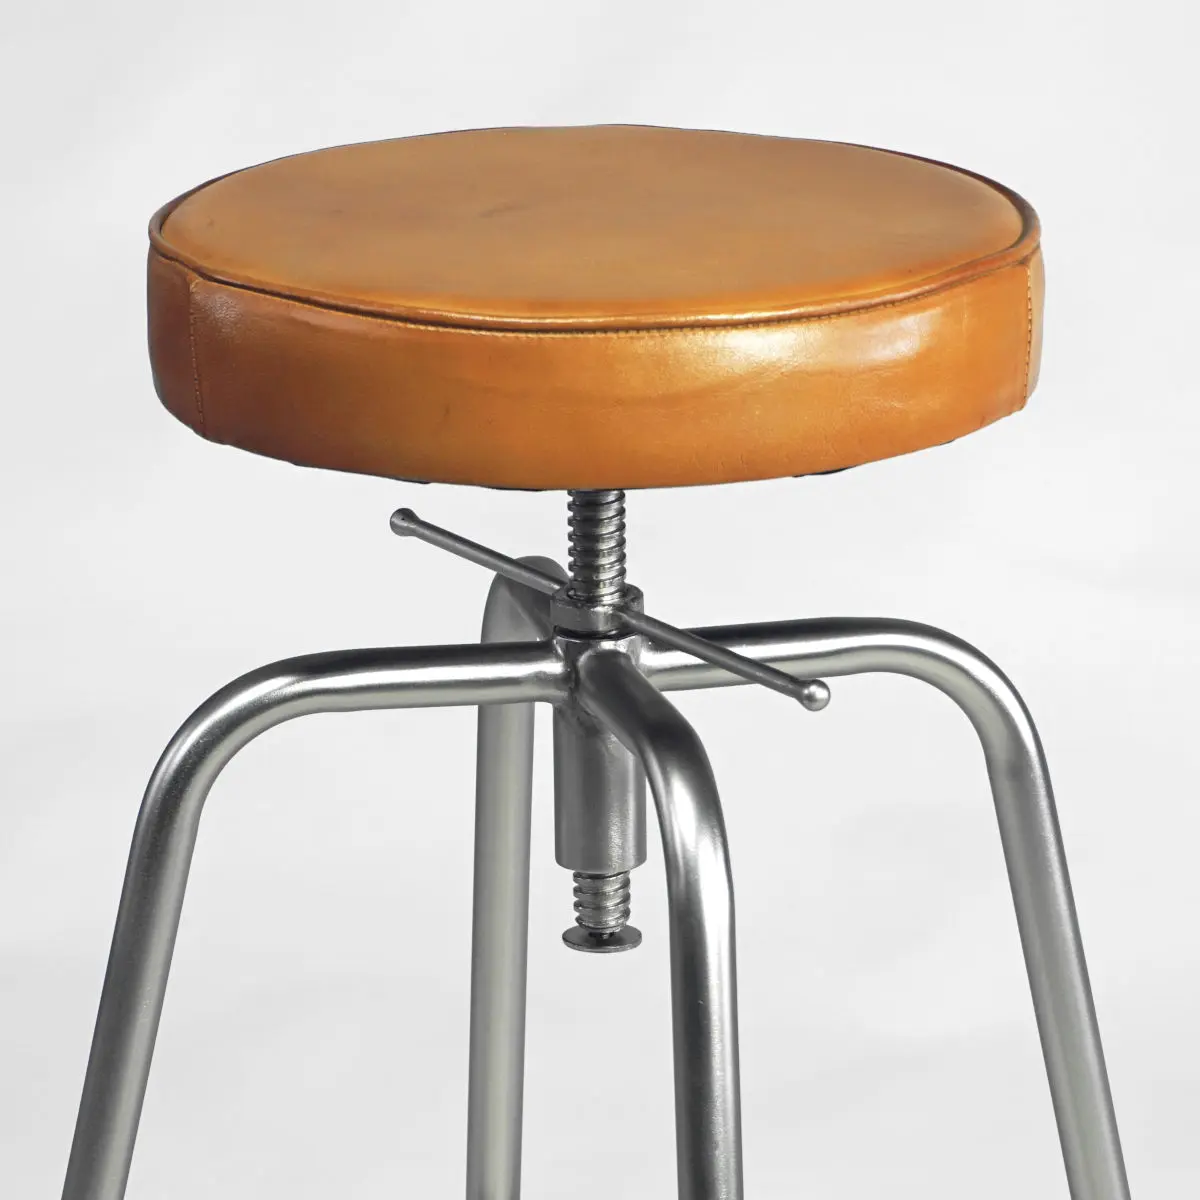 Berhocker Industrial Design mit braunem Echtledersitz - Gestell Metall stahlfarben